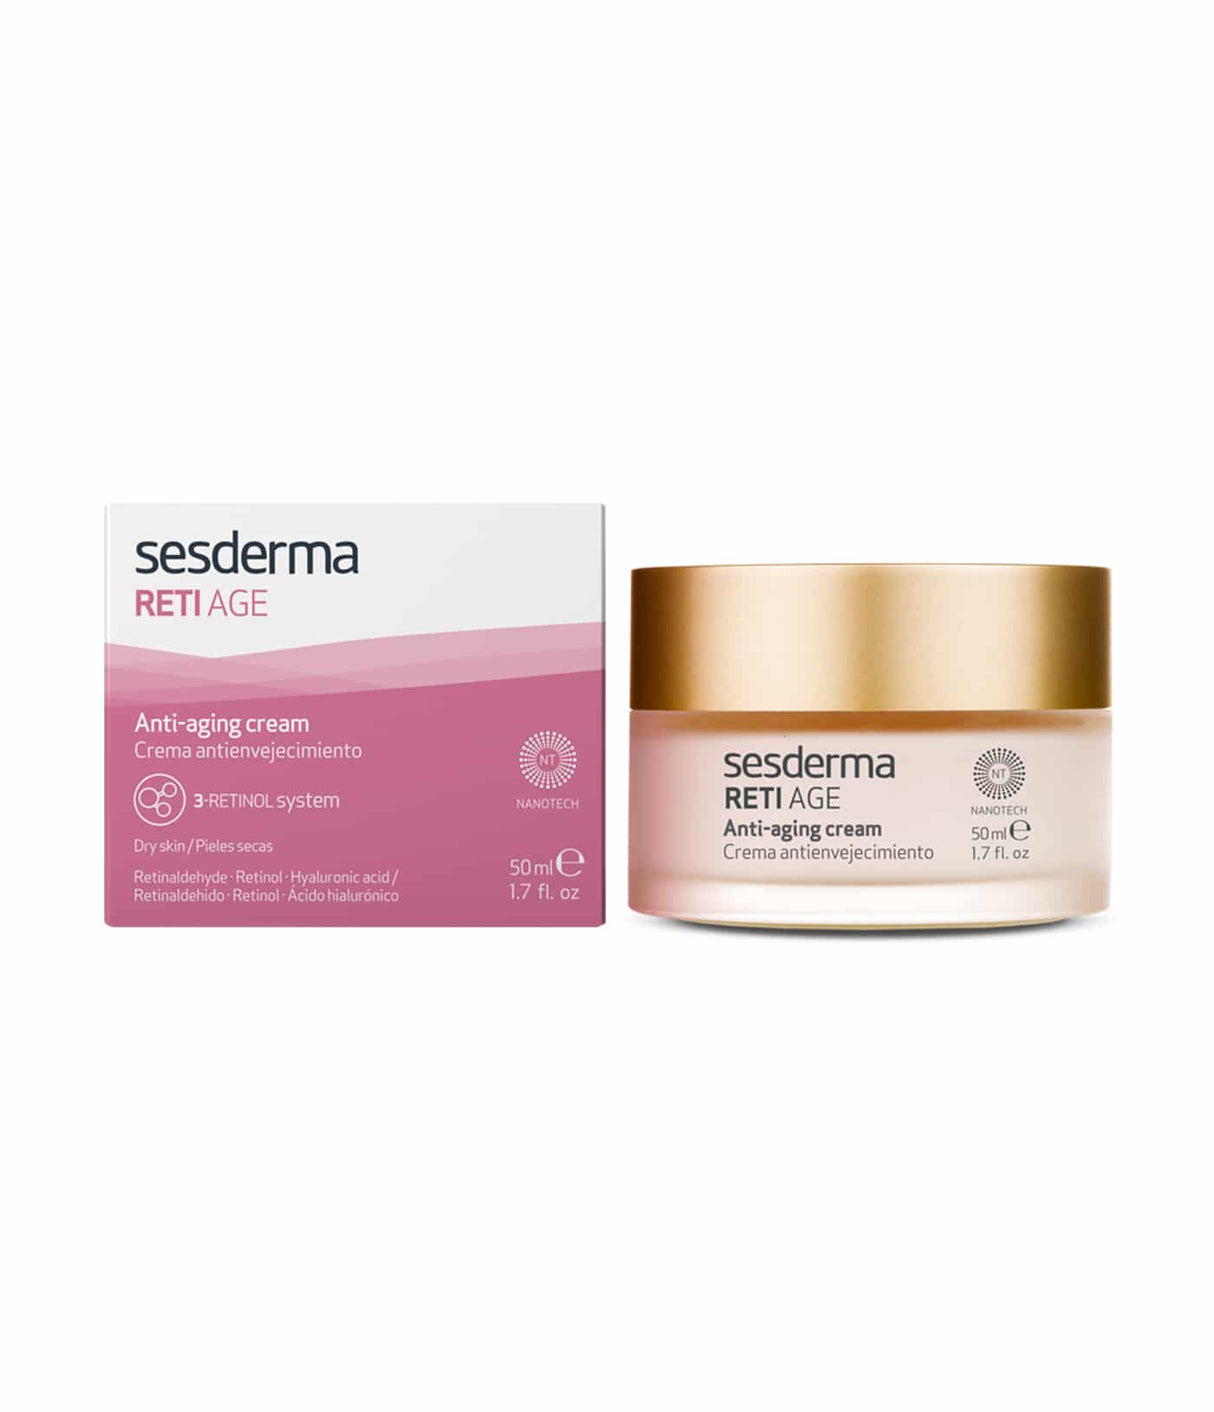 Retiage Anti-Aging Cream de Sesderma